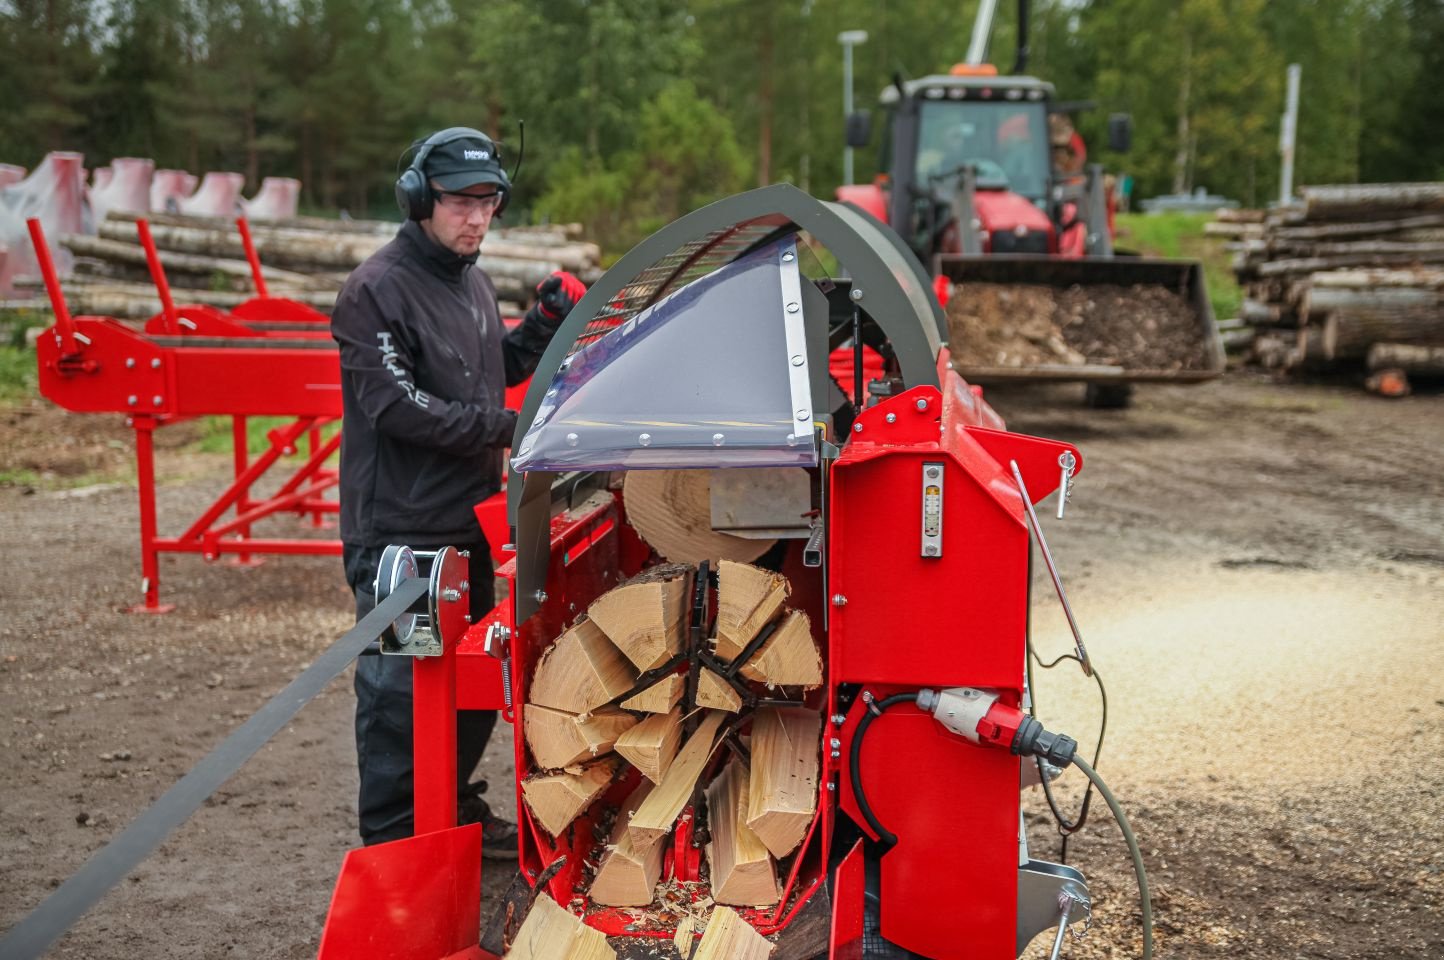 Holzspalter des Typs Hakki Pilke 38 PRO, Gebrauchtmaschine in Grou (Bild 1)